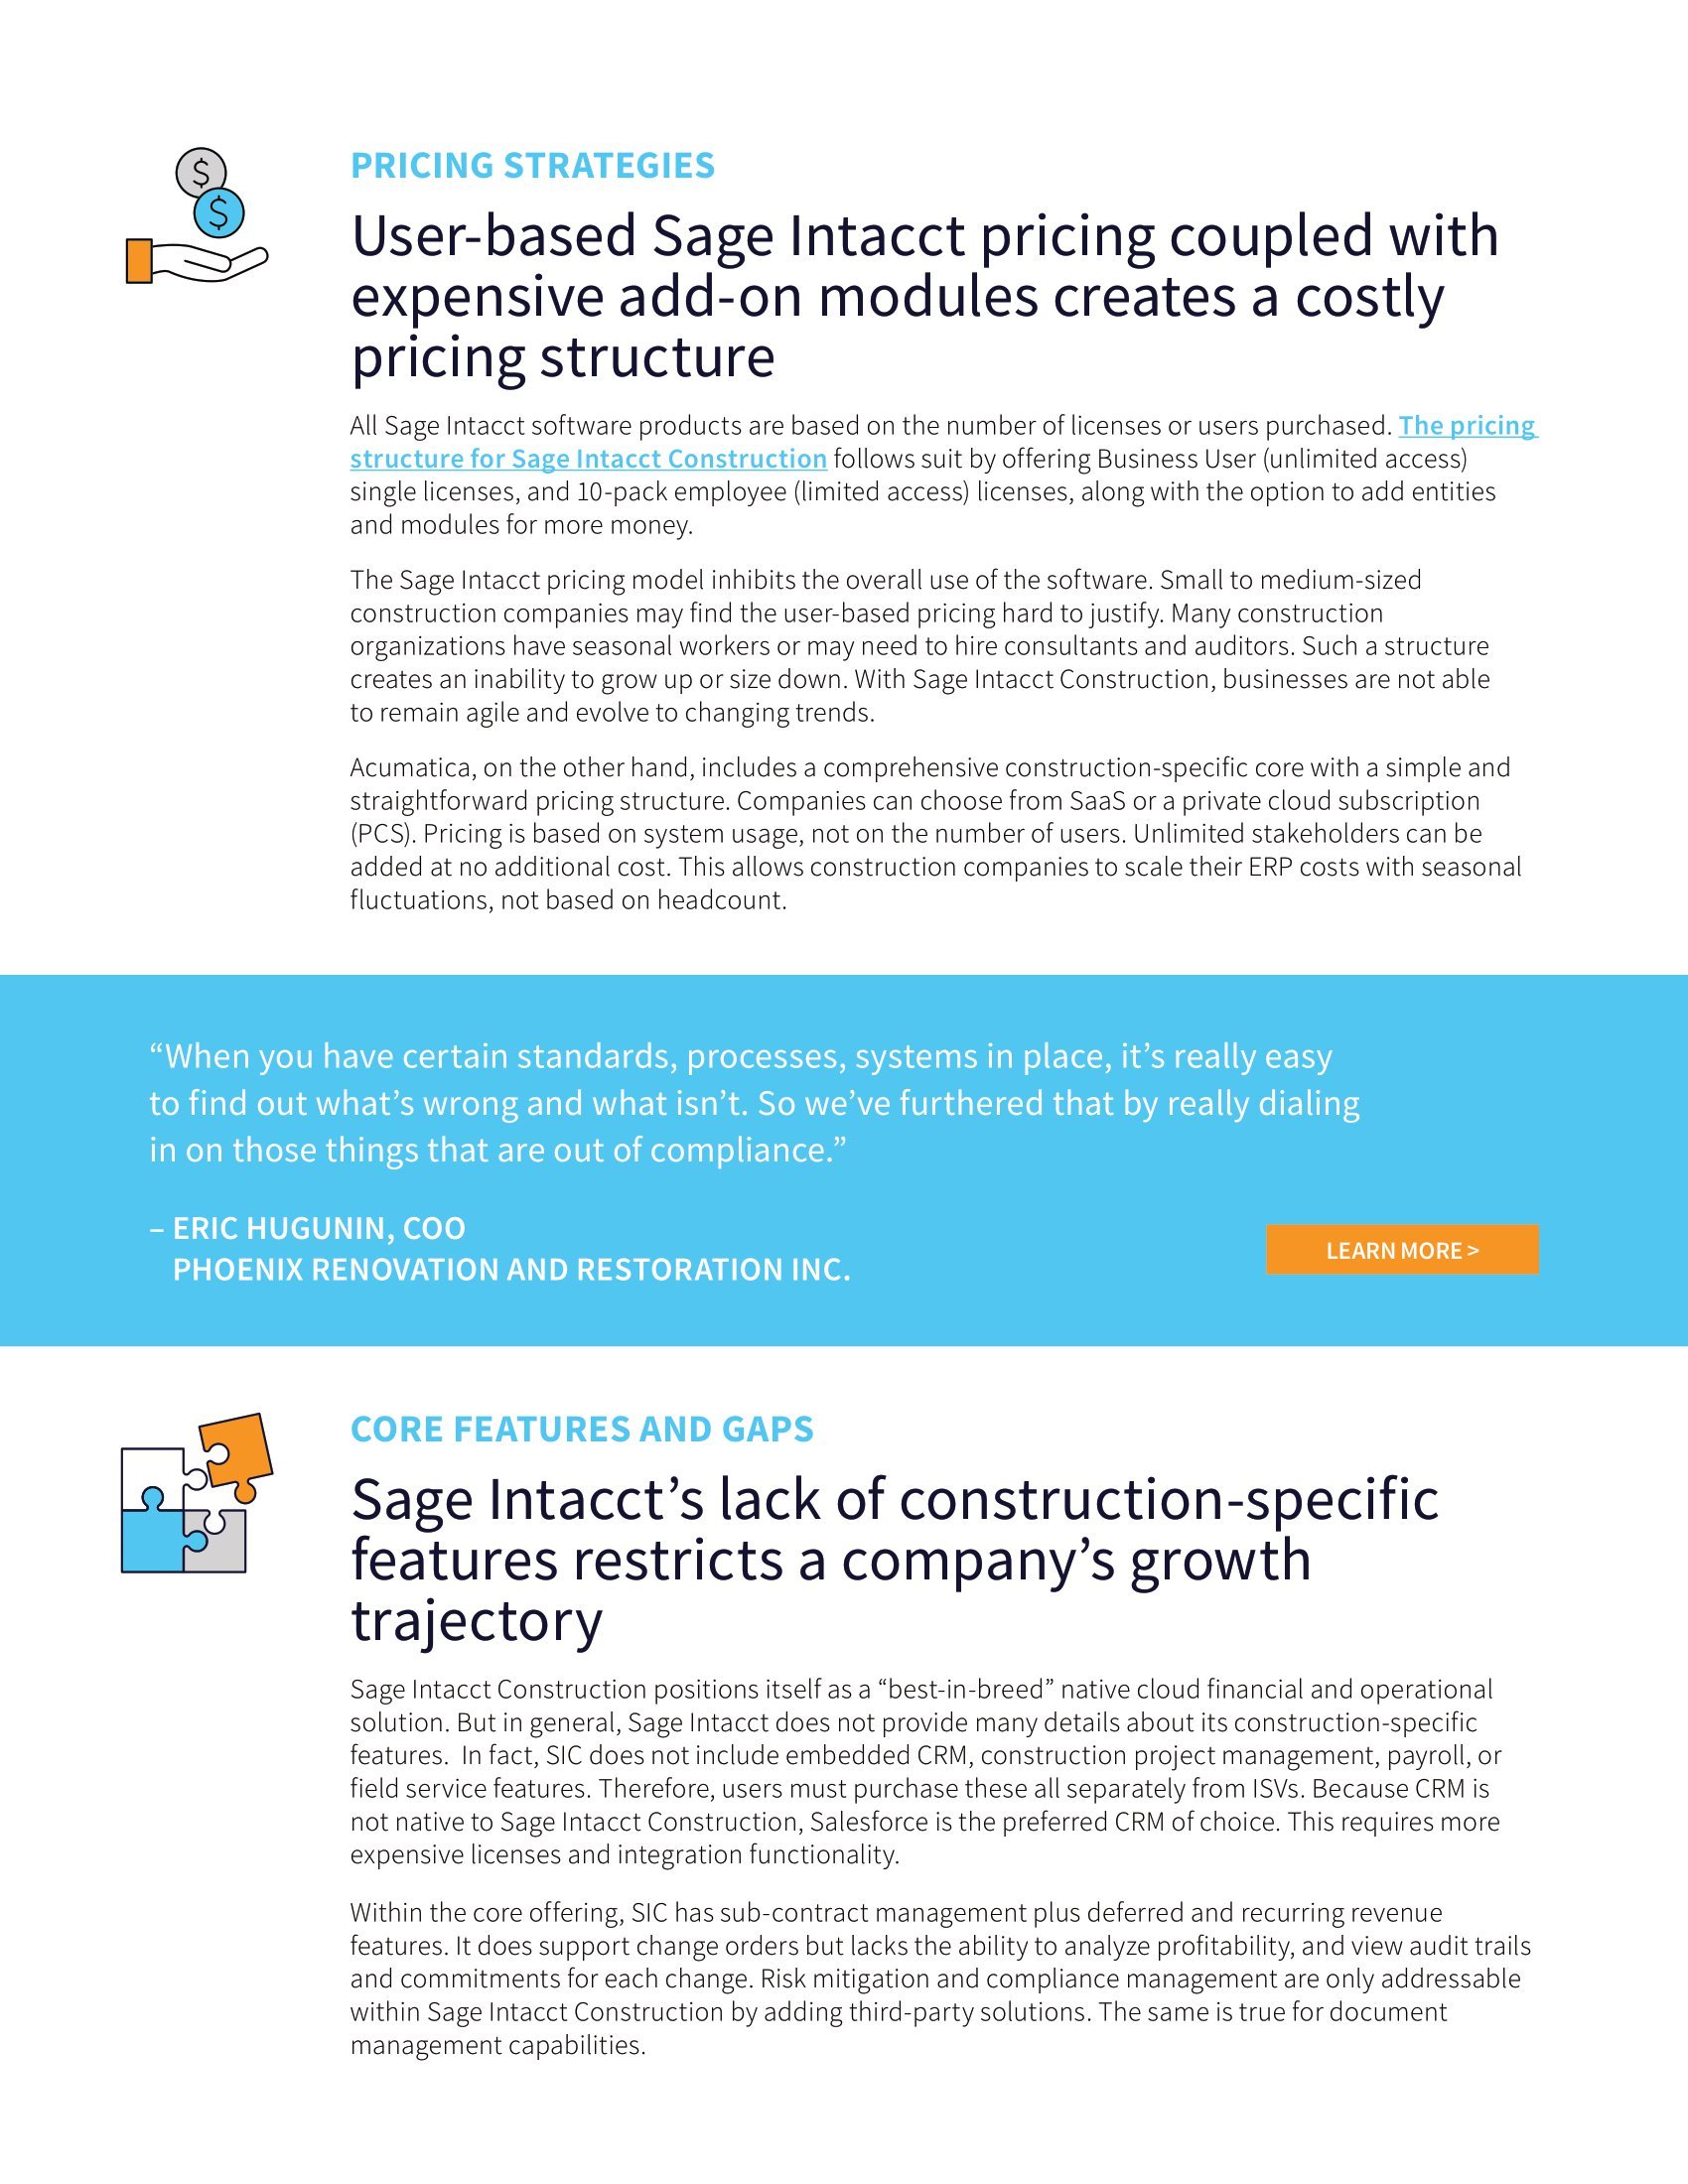 Comparaison d’Acumatica Construction Edition à Sage Intacct Construction, page 2